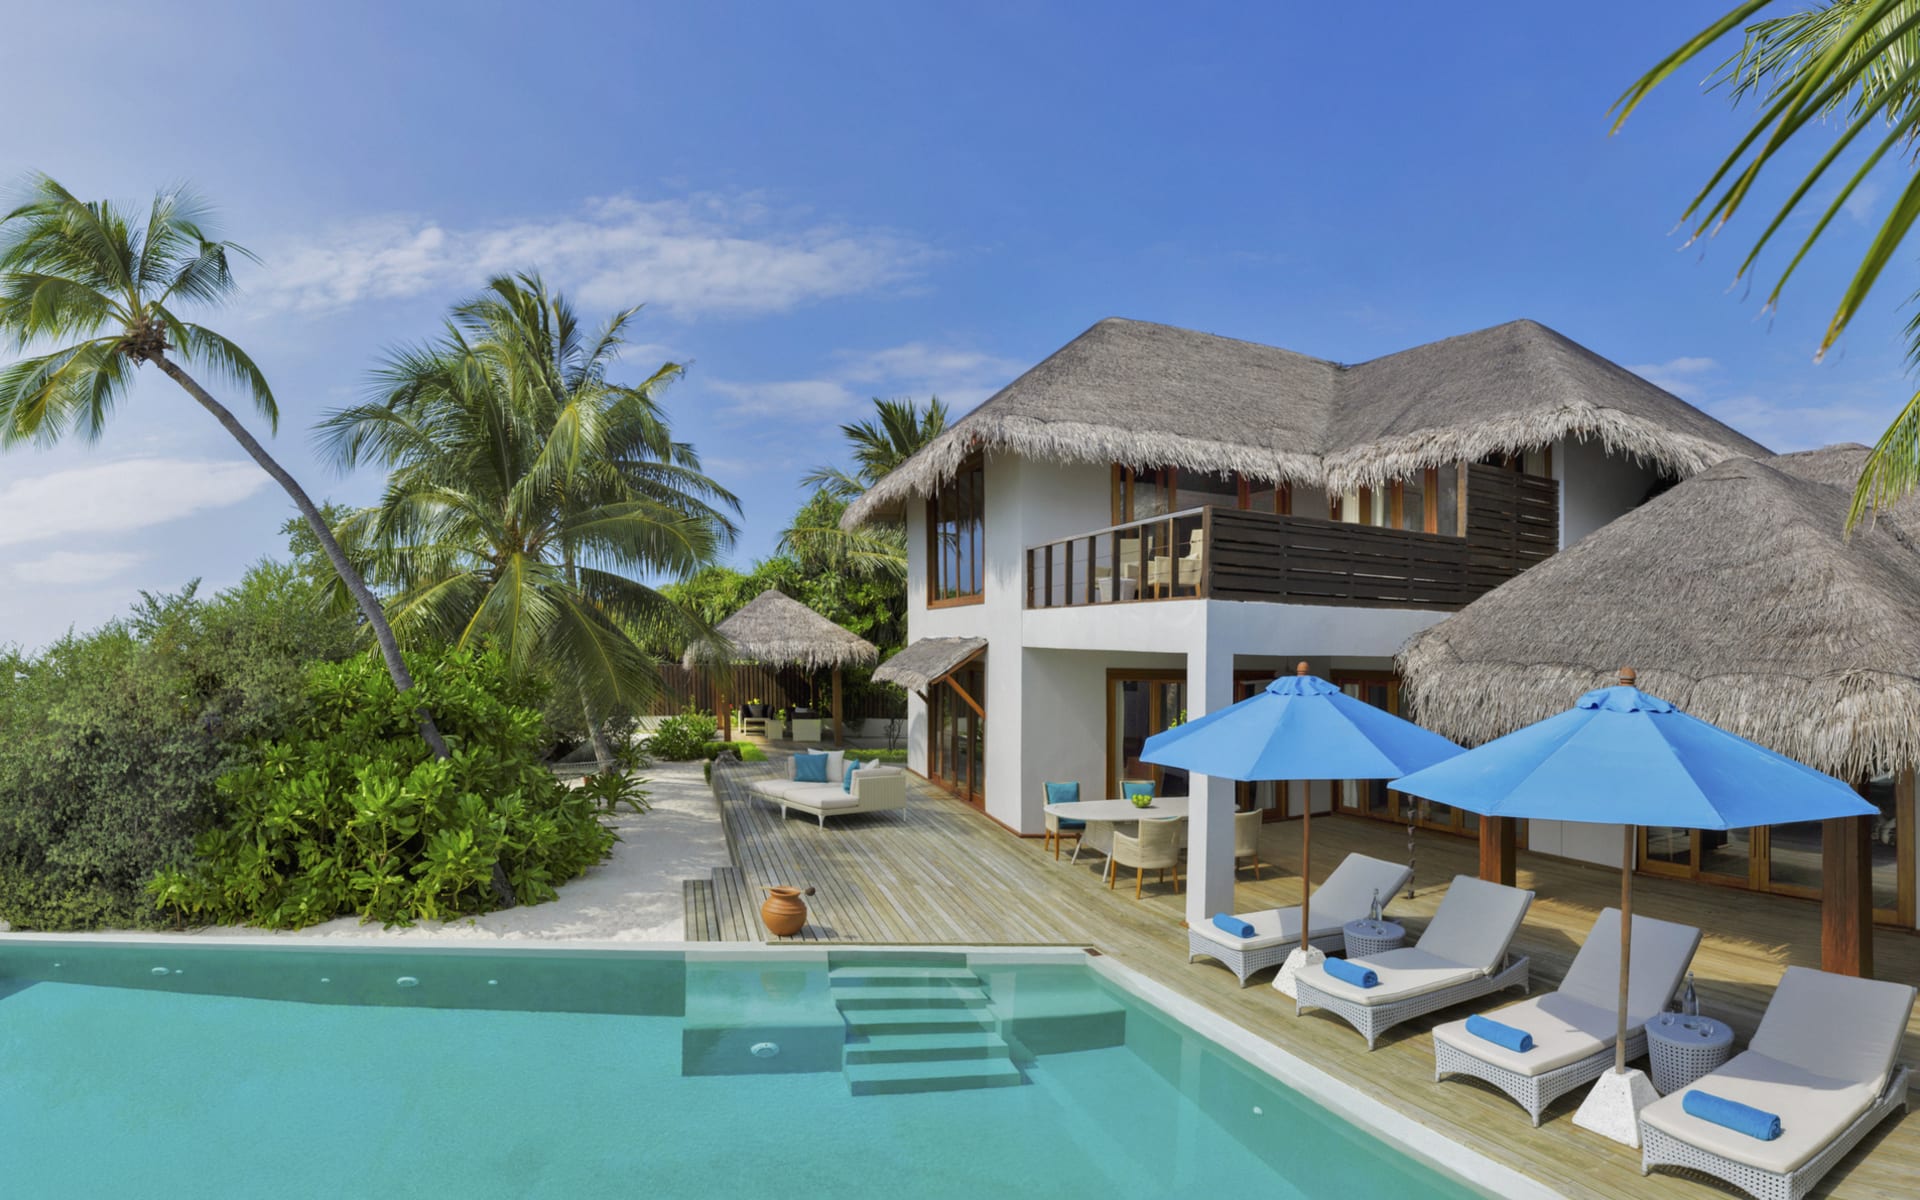 Dusit_Thani_Maldives_Beach_Residence_igez3i